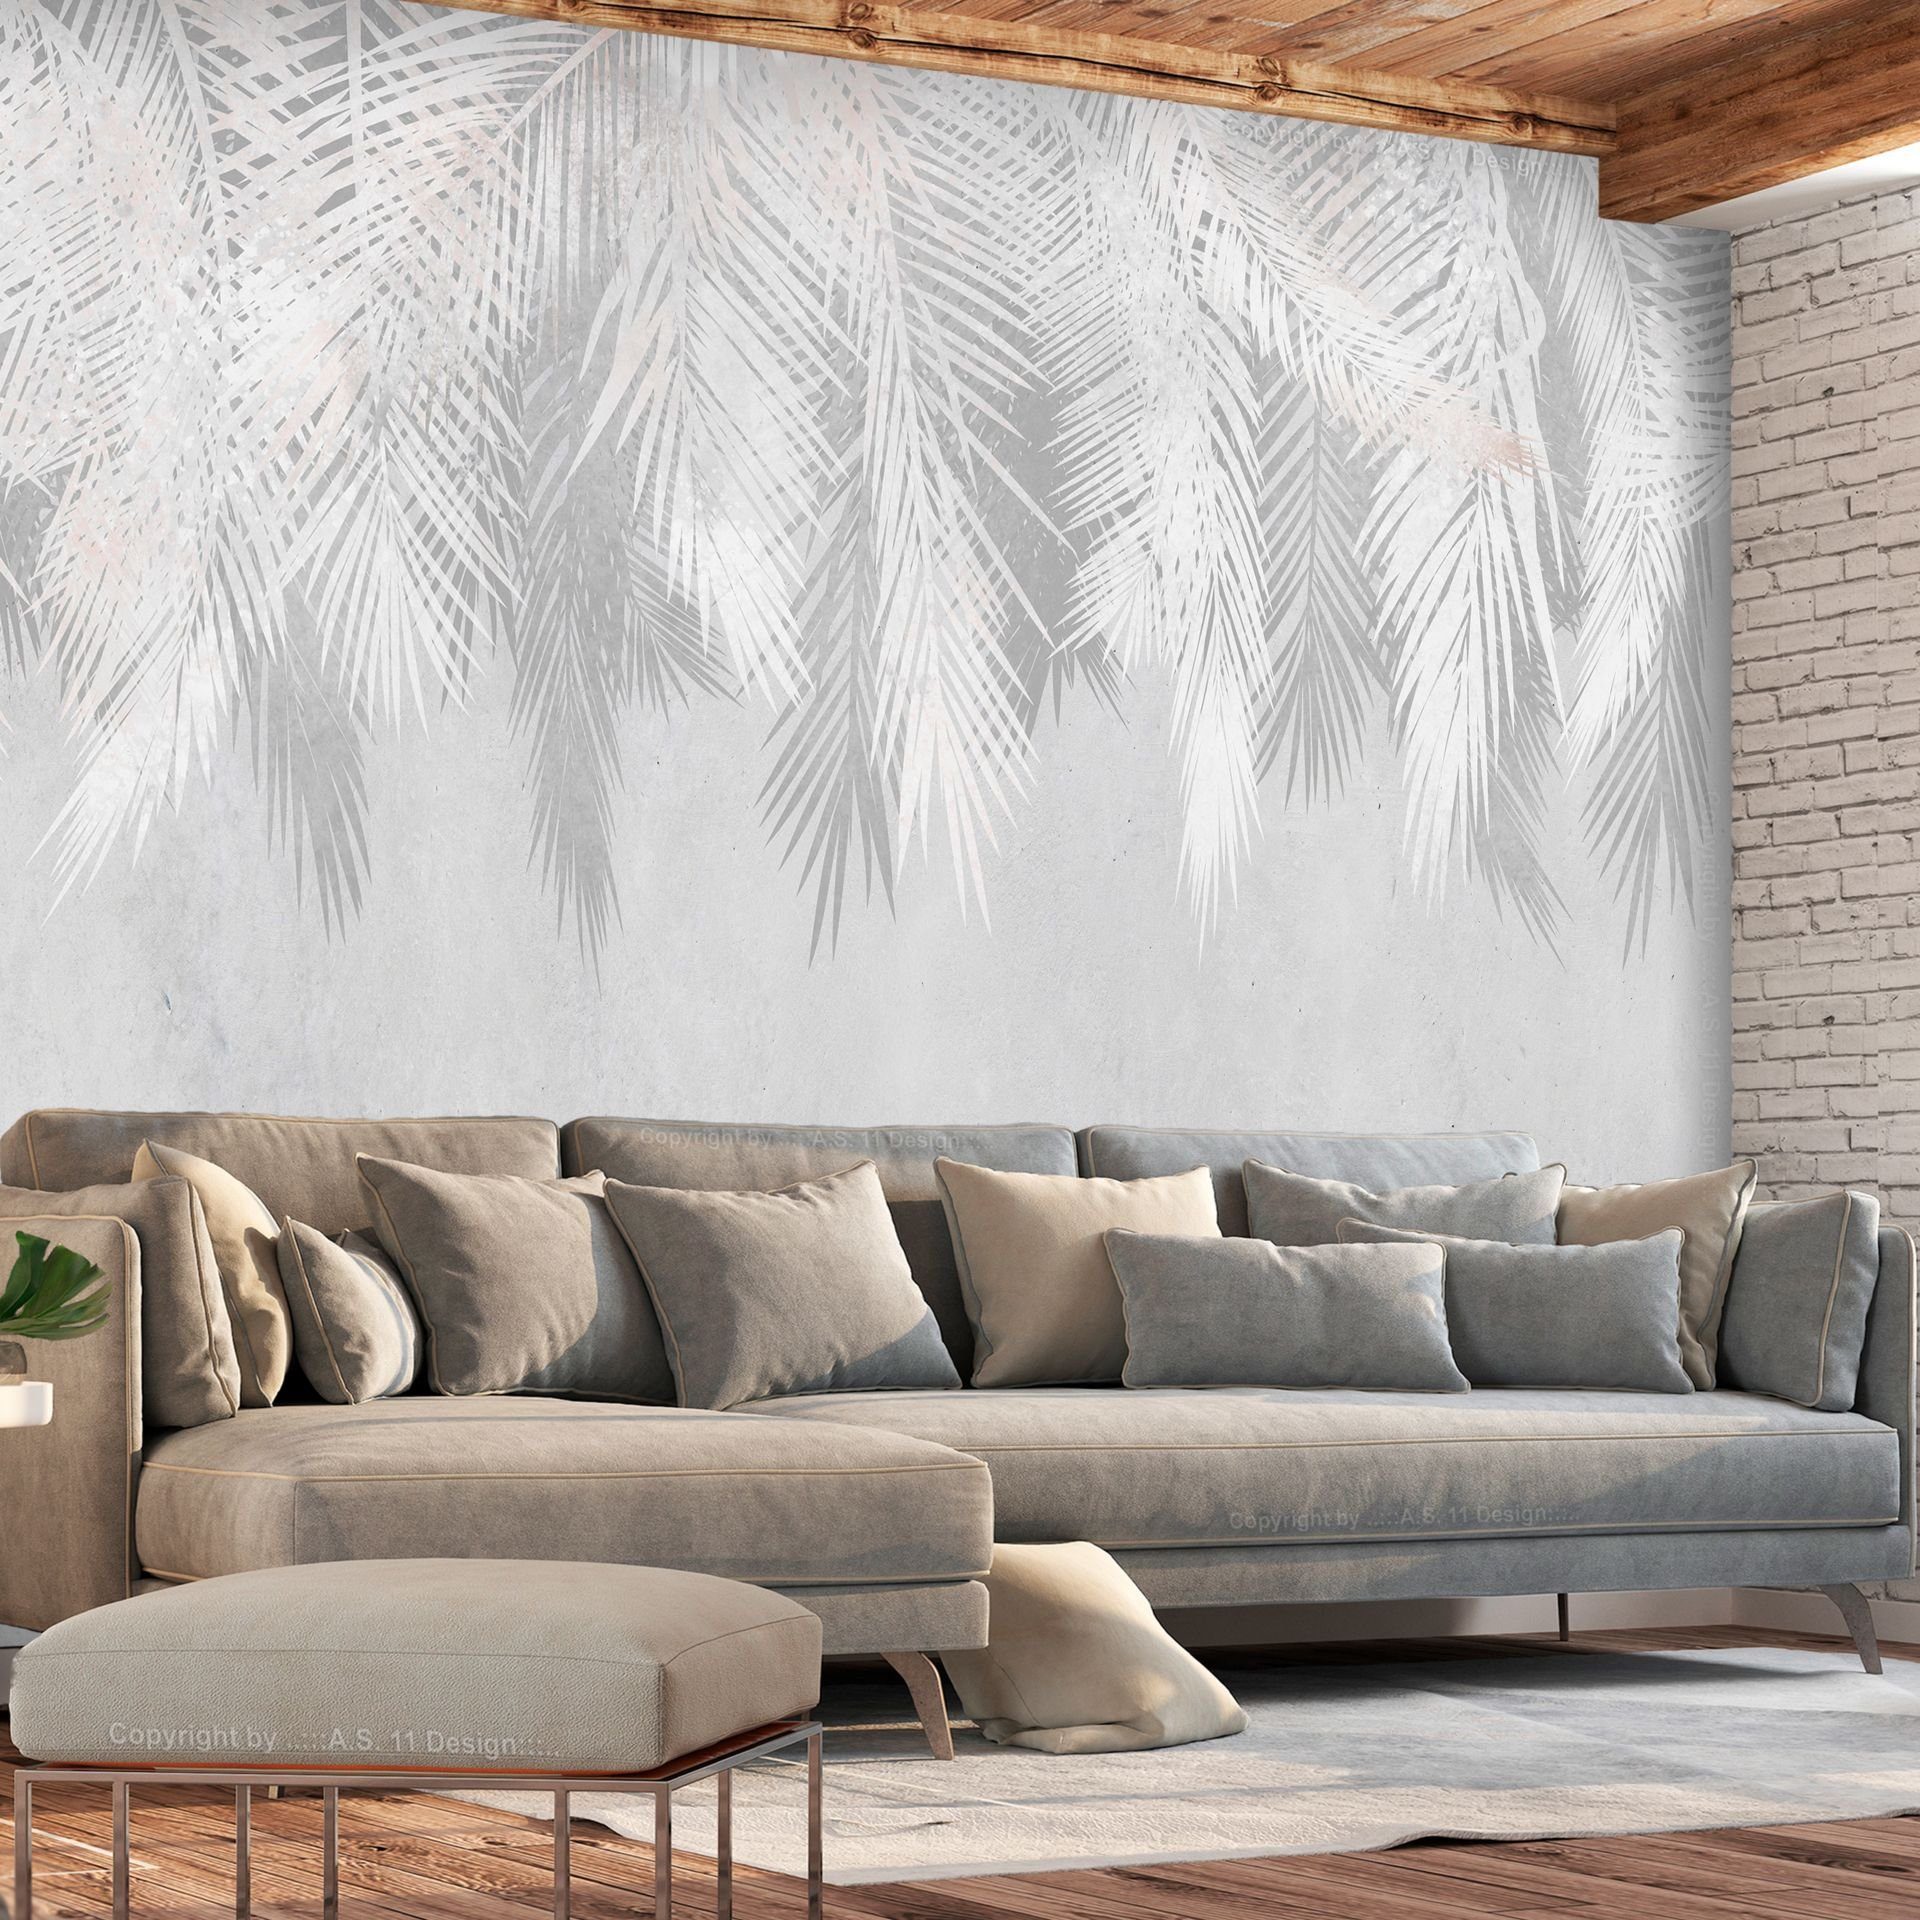 KUNSTLOFT Vliestapete Pale Palms 1x0.7 m, halb-matt, lichtbeständige Design Tapete